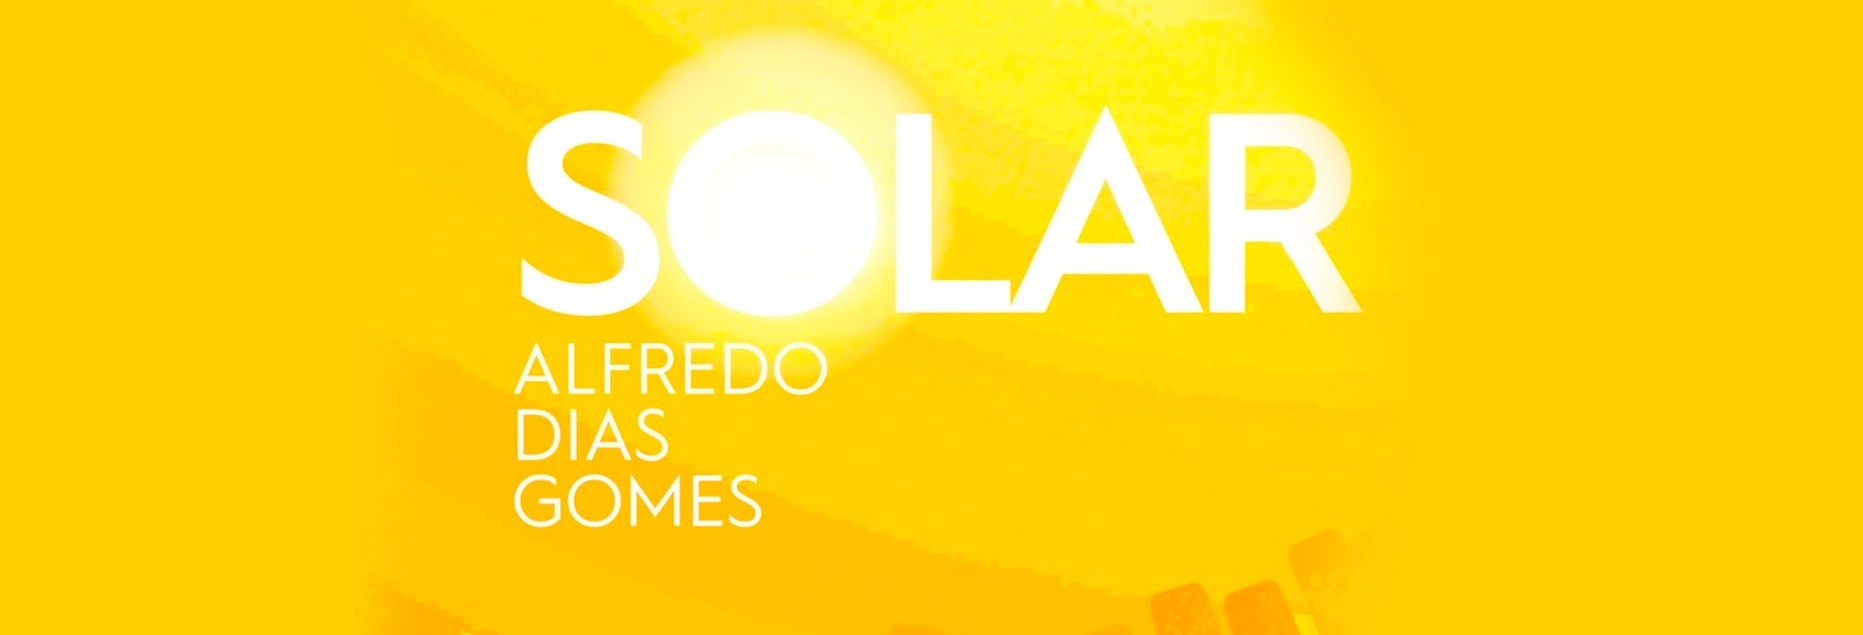 Alfredo Dias Gomes lança SOLAR, seu 11º disco solo, totalmente autoral e inédito